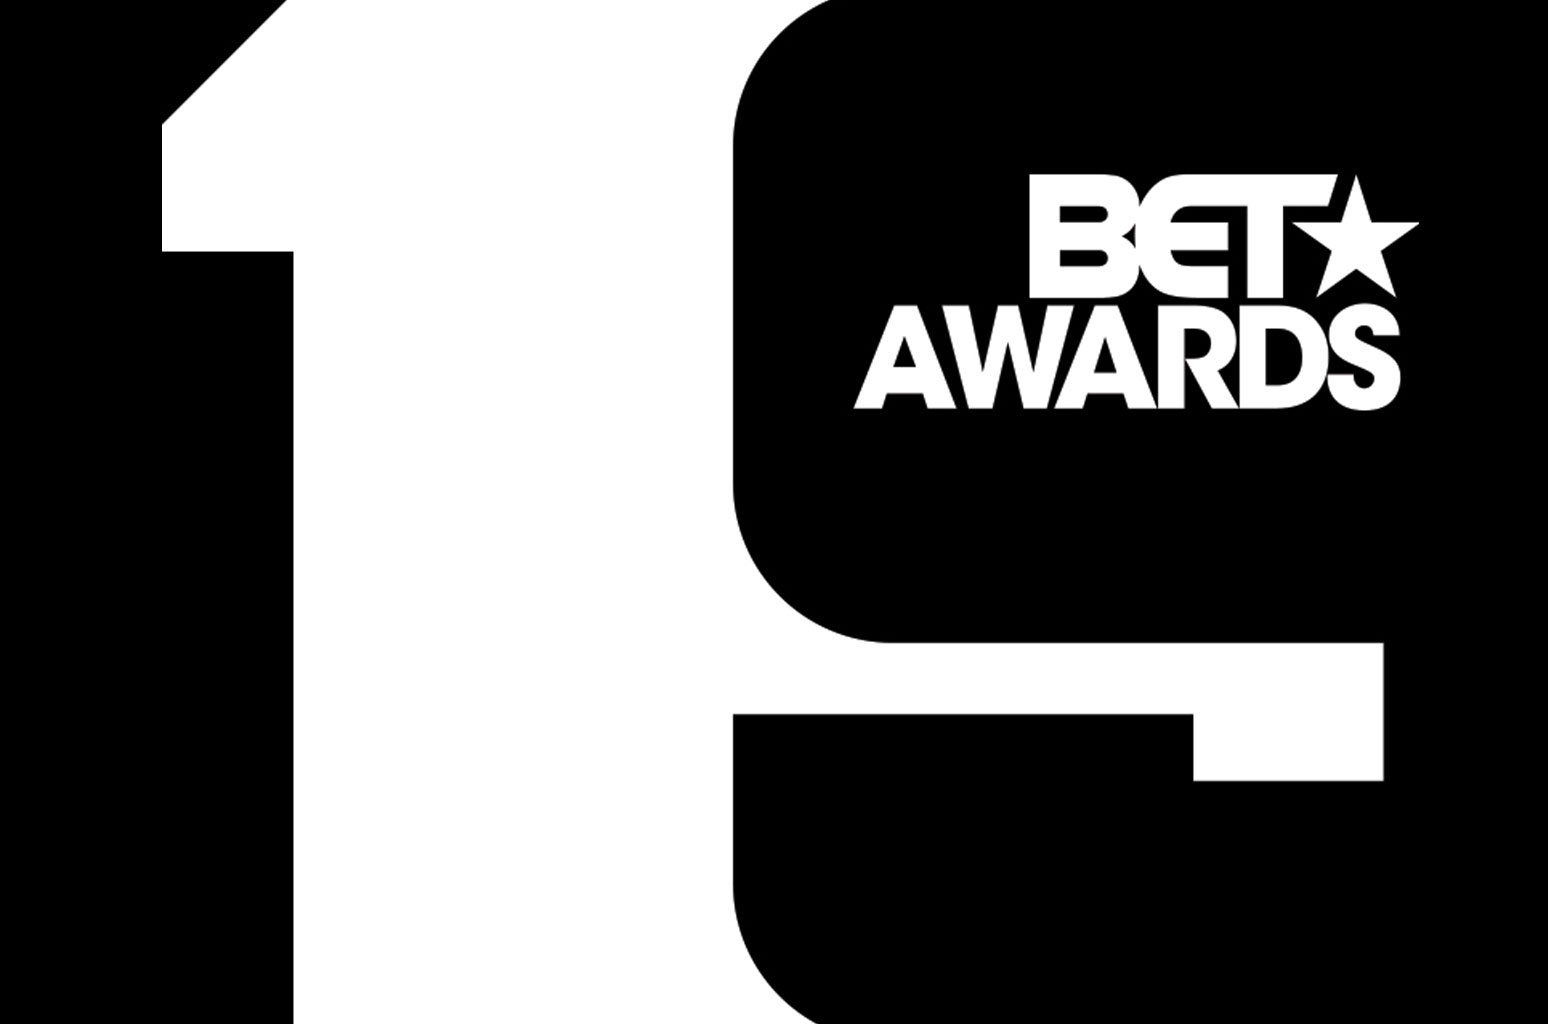 bet awards 19 logo